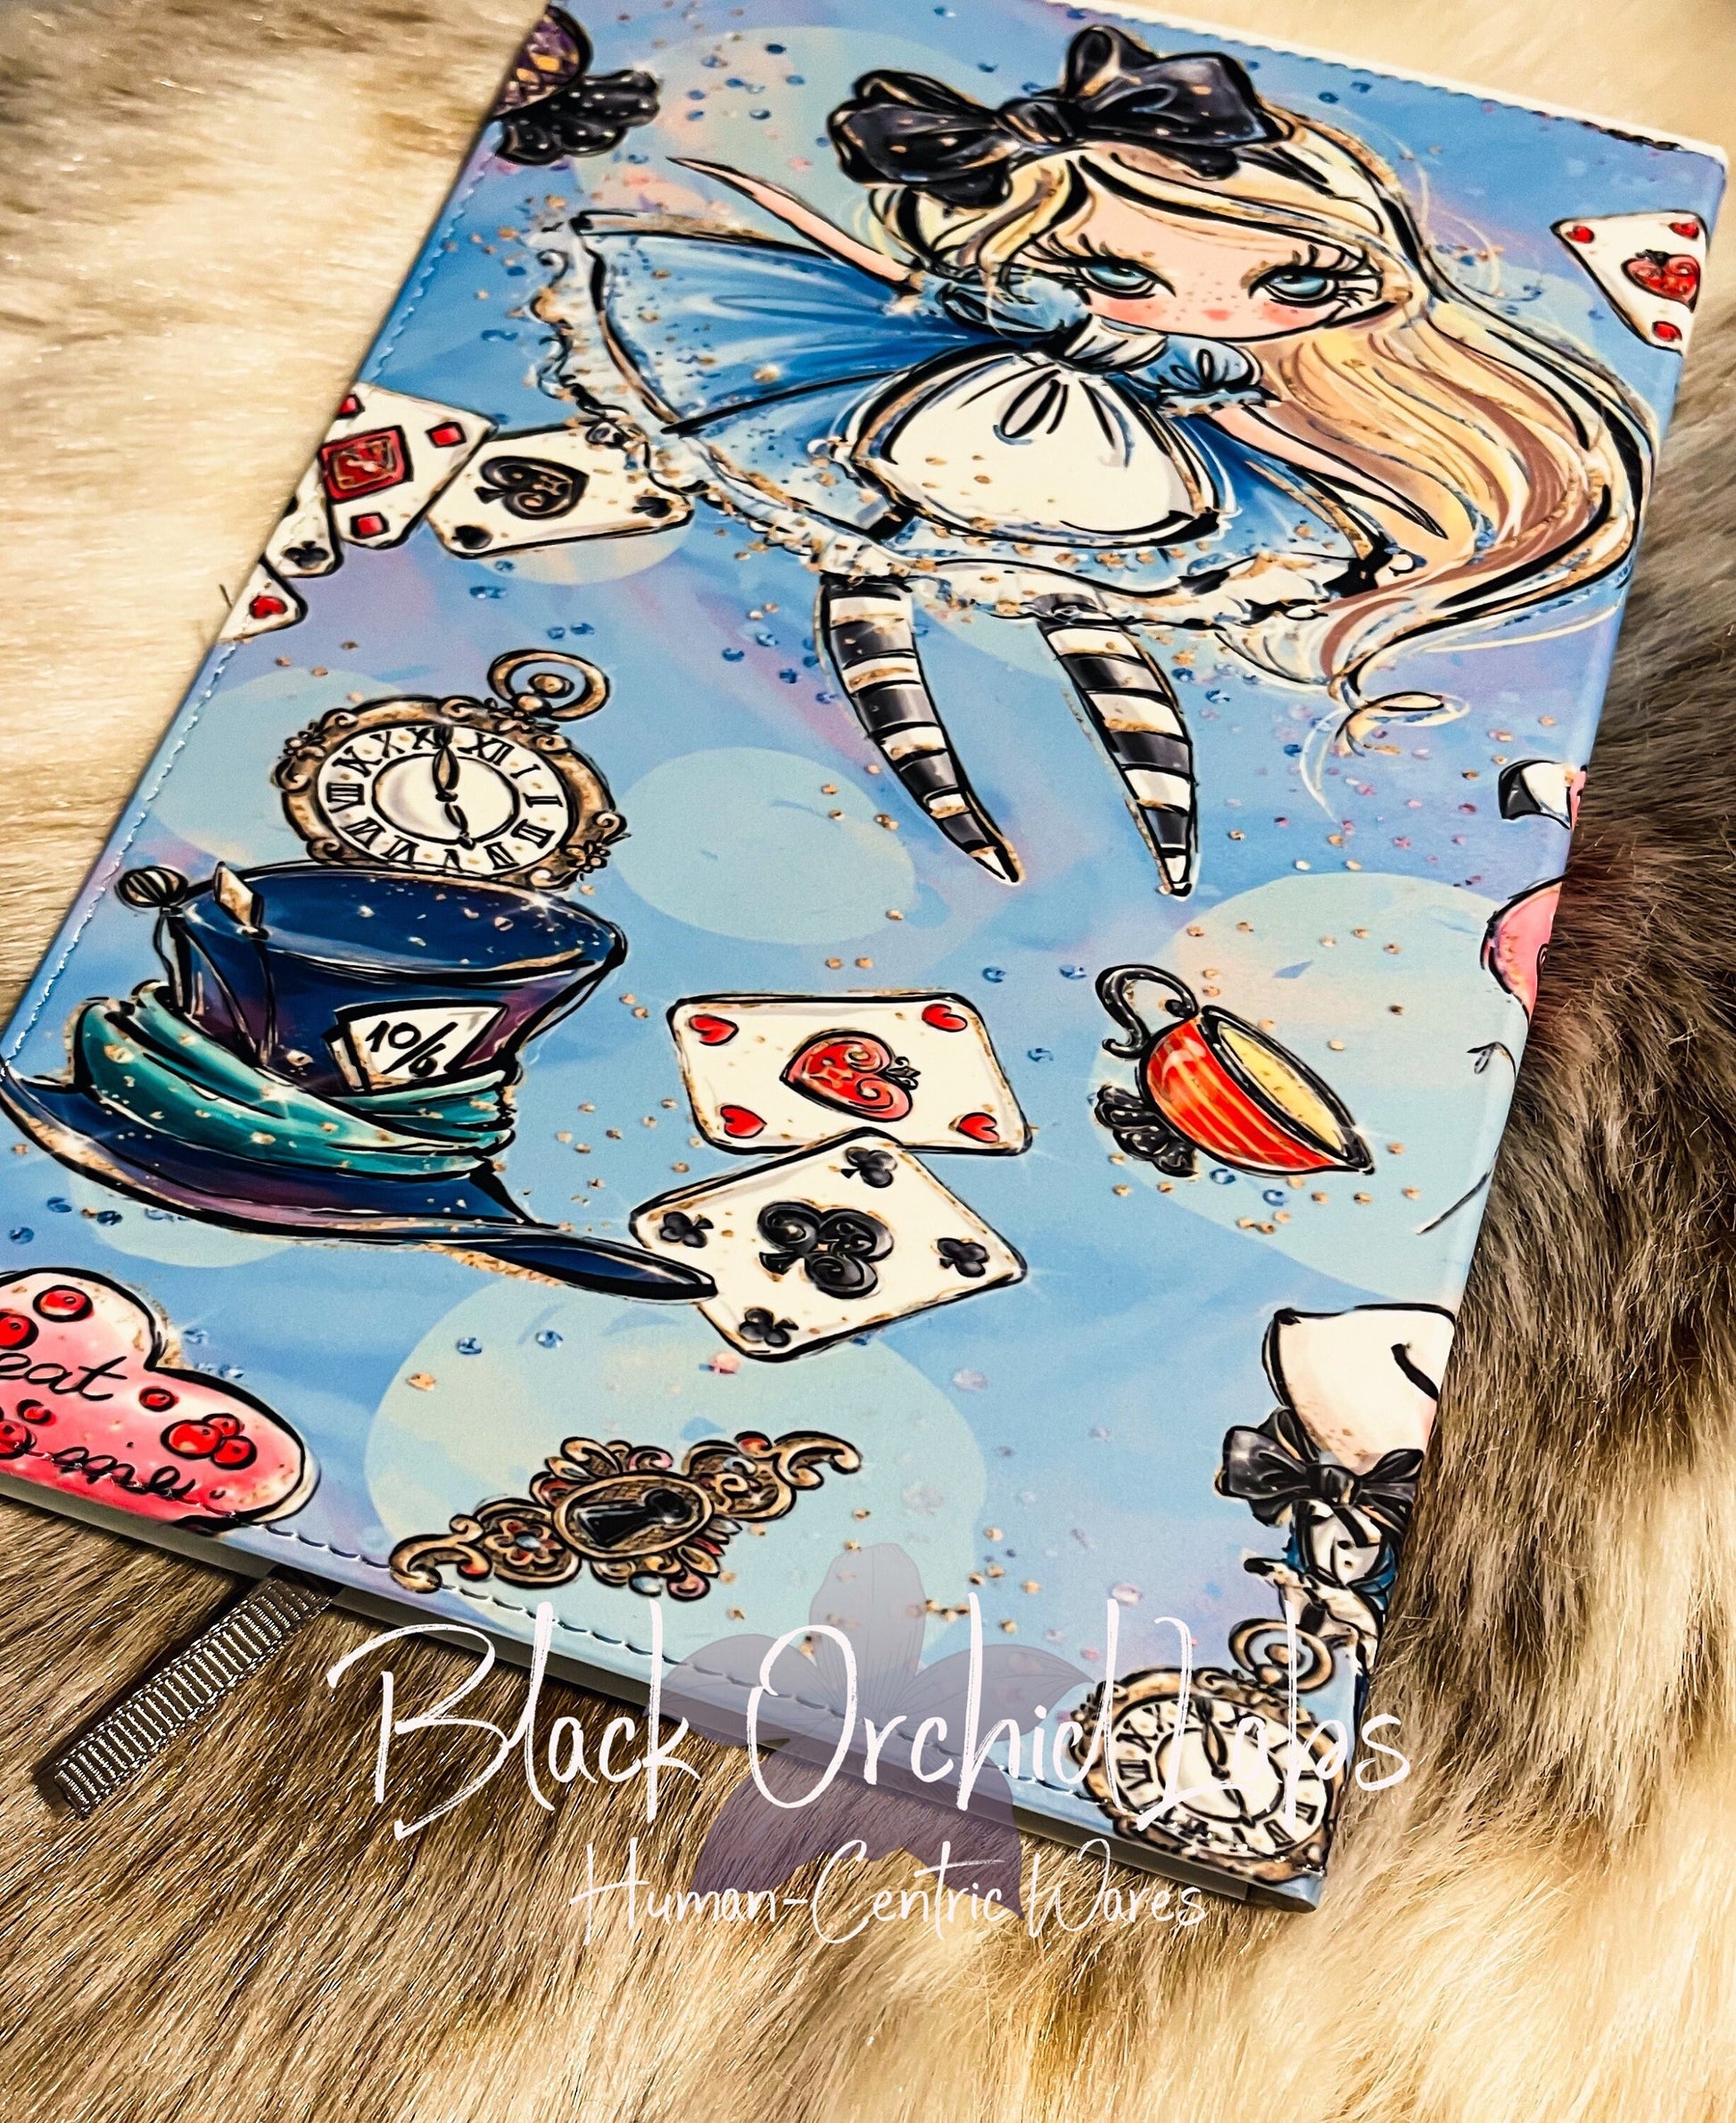 Alice in Wonderland Gift Notebook, Dark Academia Vegan Leather Journal, 8”x6”, journal, goth, alice in wonderland, gift for her